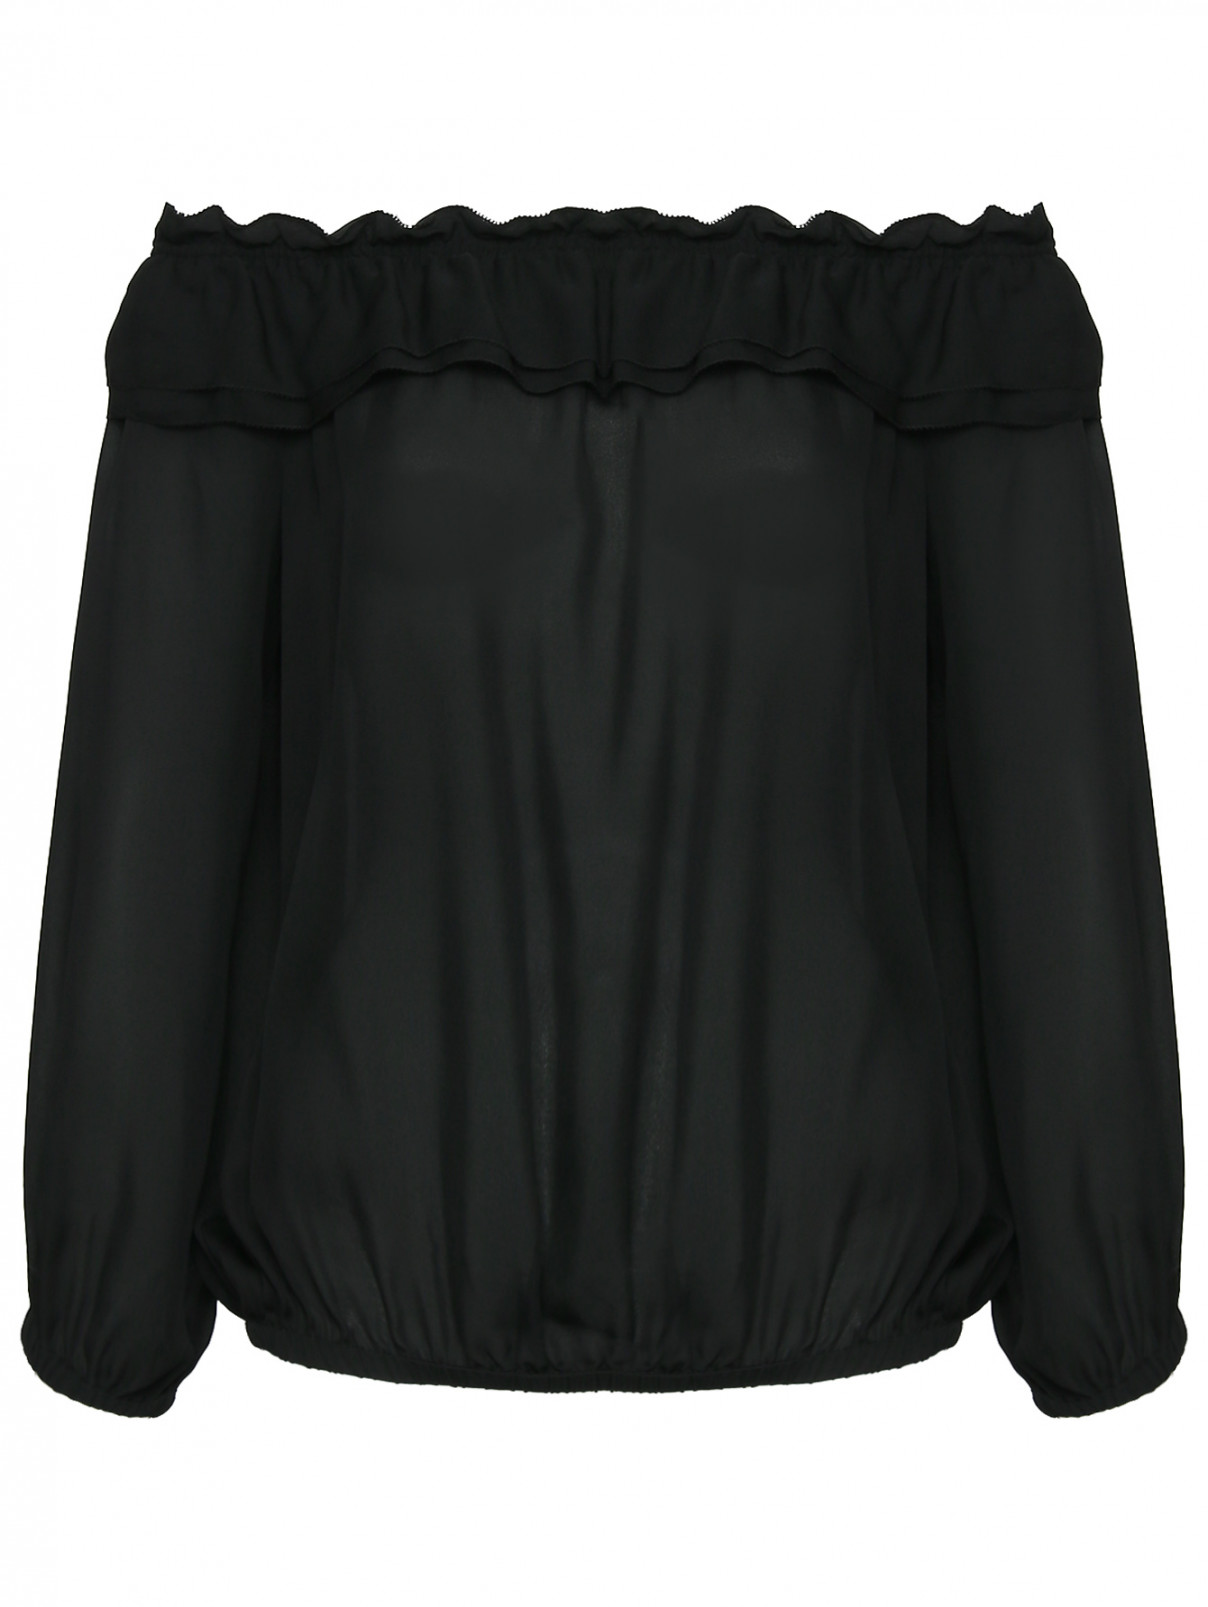 Блуза из шелка свободного кроя с открытыми плечами Luisa Spagnoli  –  Общий вид  – Цвет:  Черный